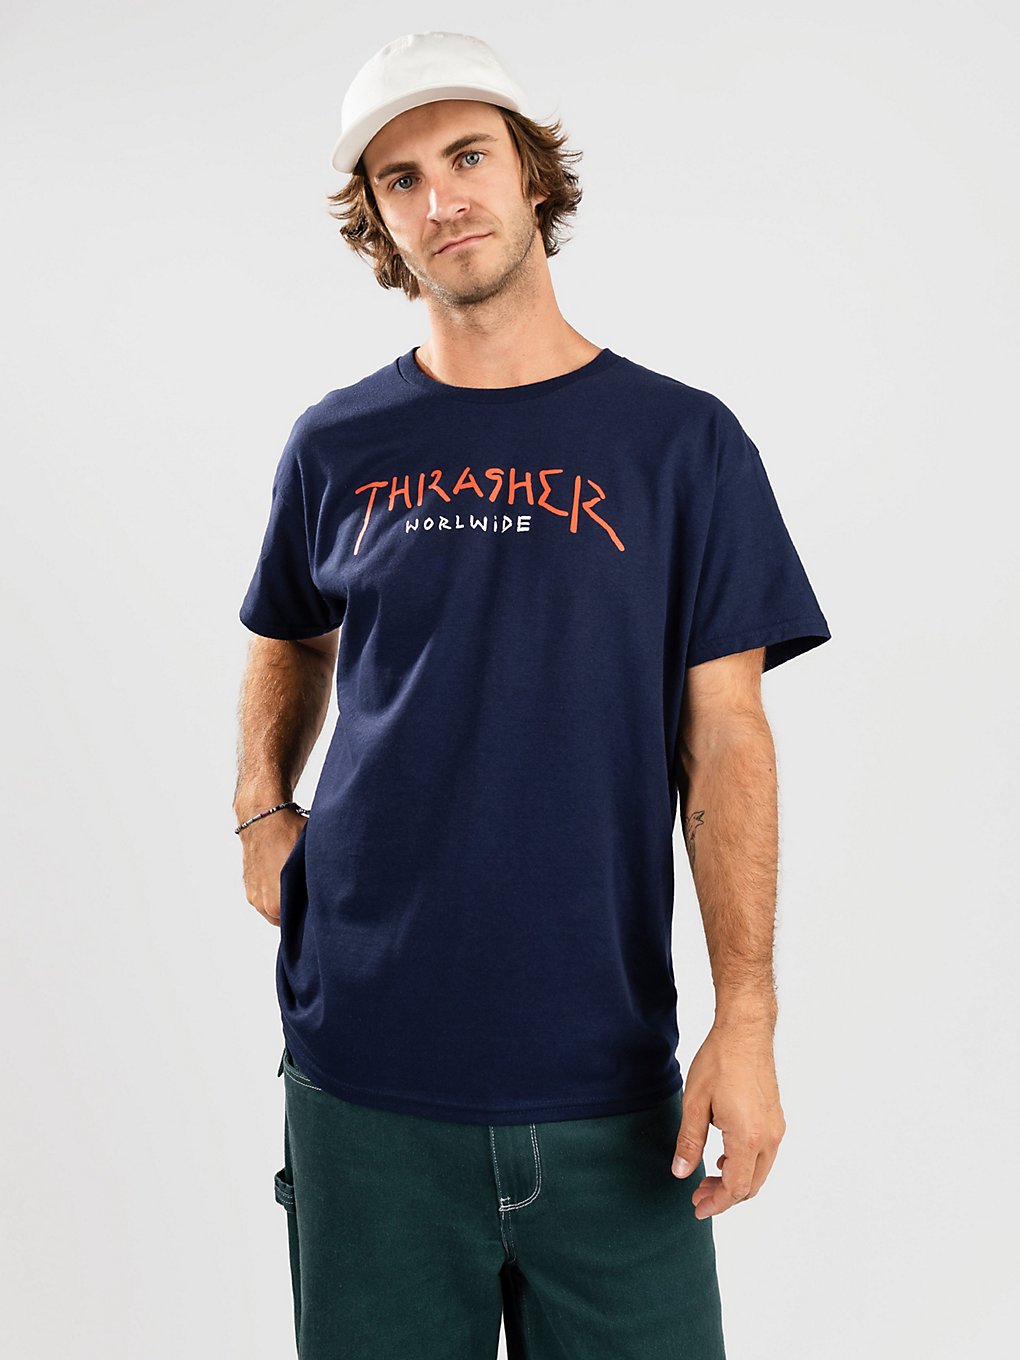 Thrasher Worldwide T-Shirt red kaufen